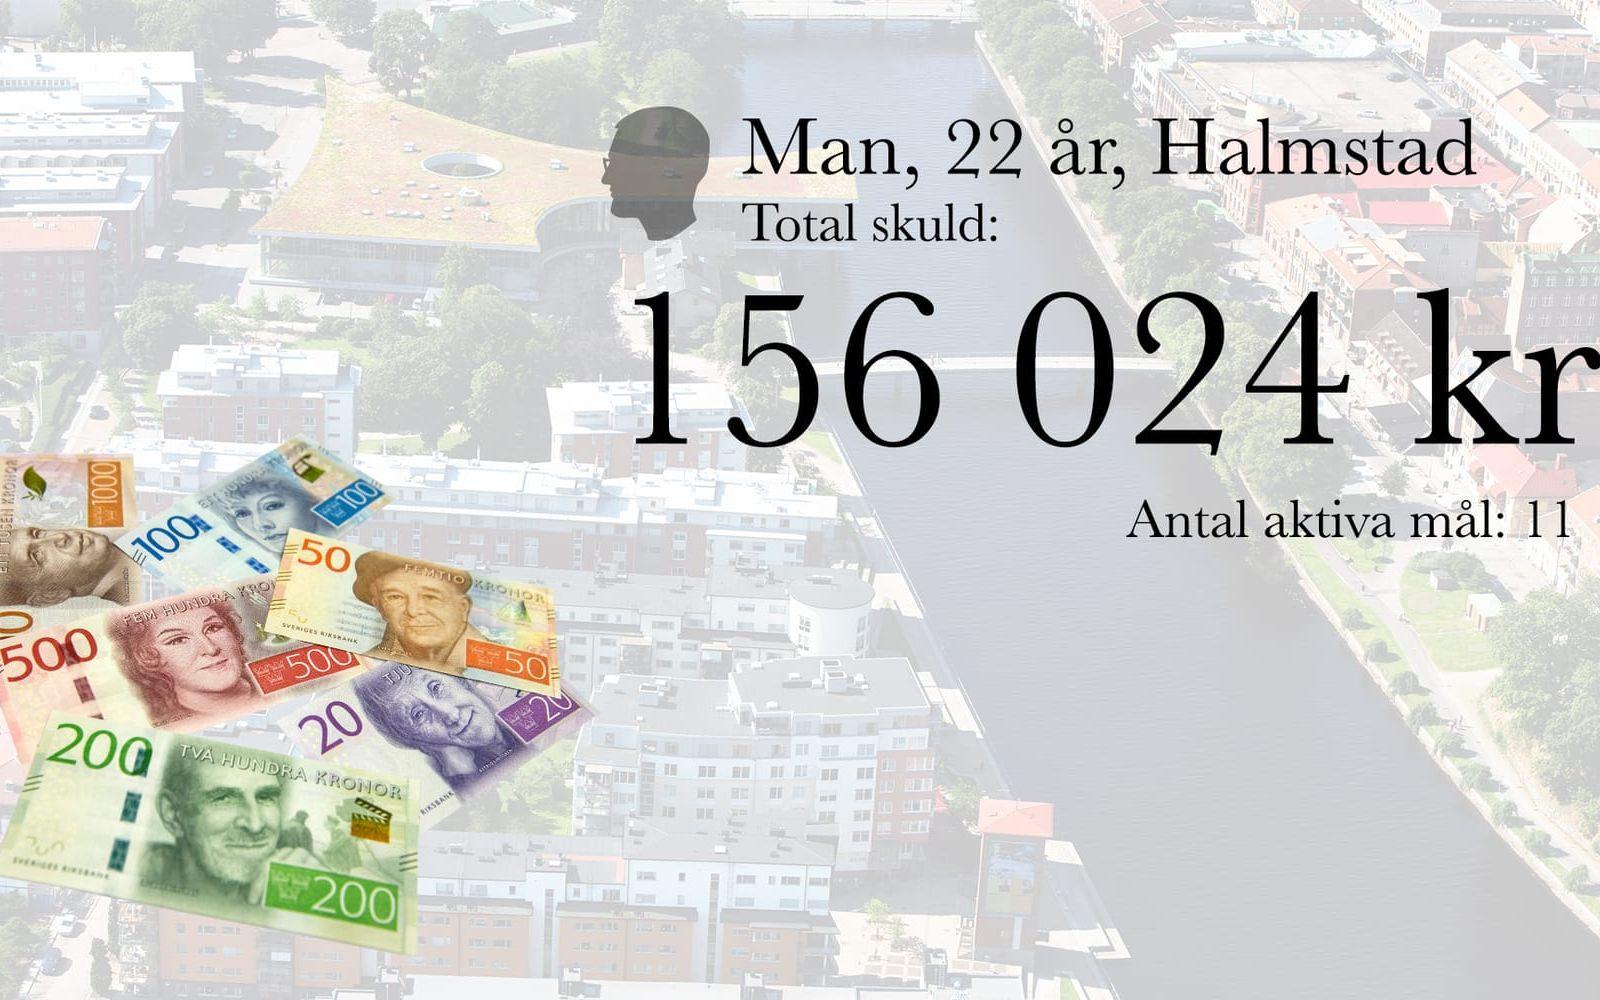 12. Man, 22 år, Halmstad. Total skuld: 156 024 kronor. Antal aktiva mål: 11
